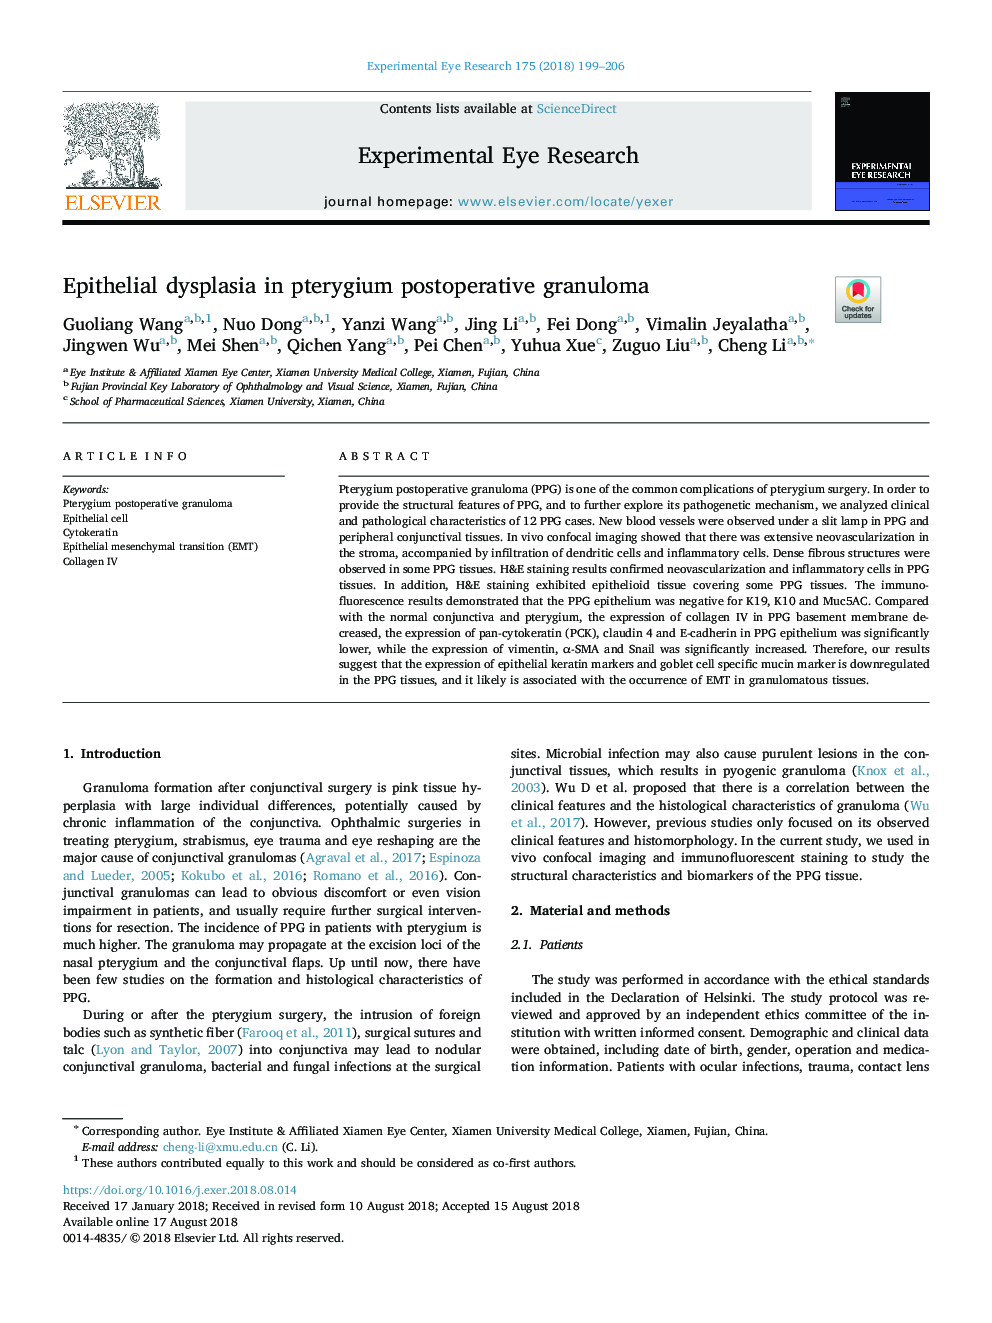 Epithelial dysplasia in pterygium postoperative granuloma